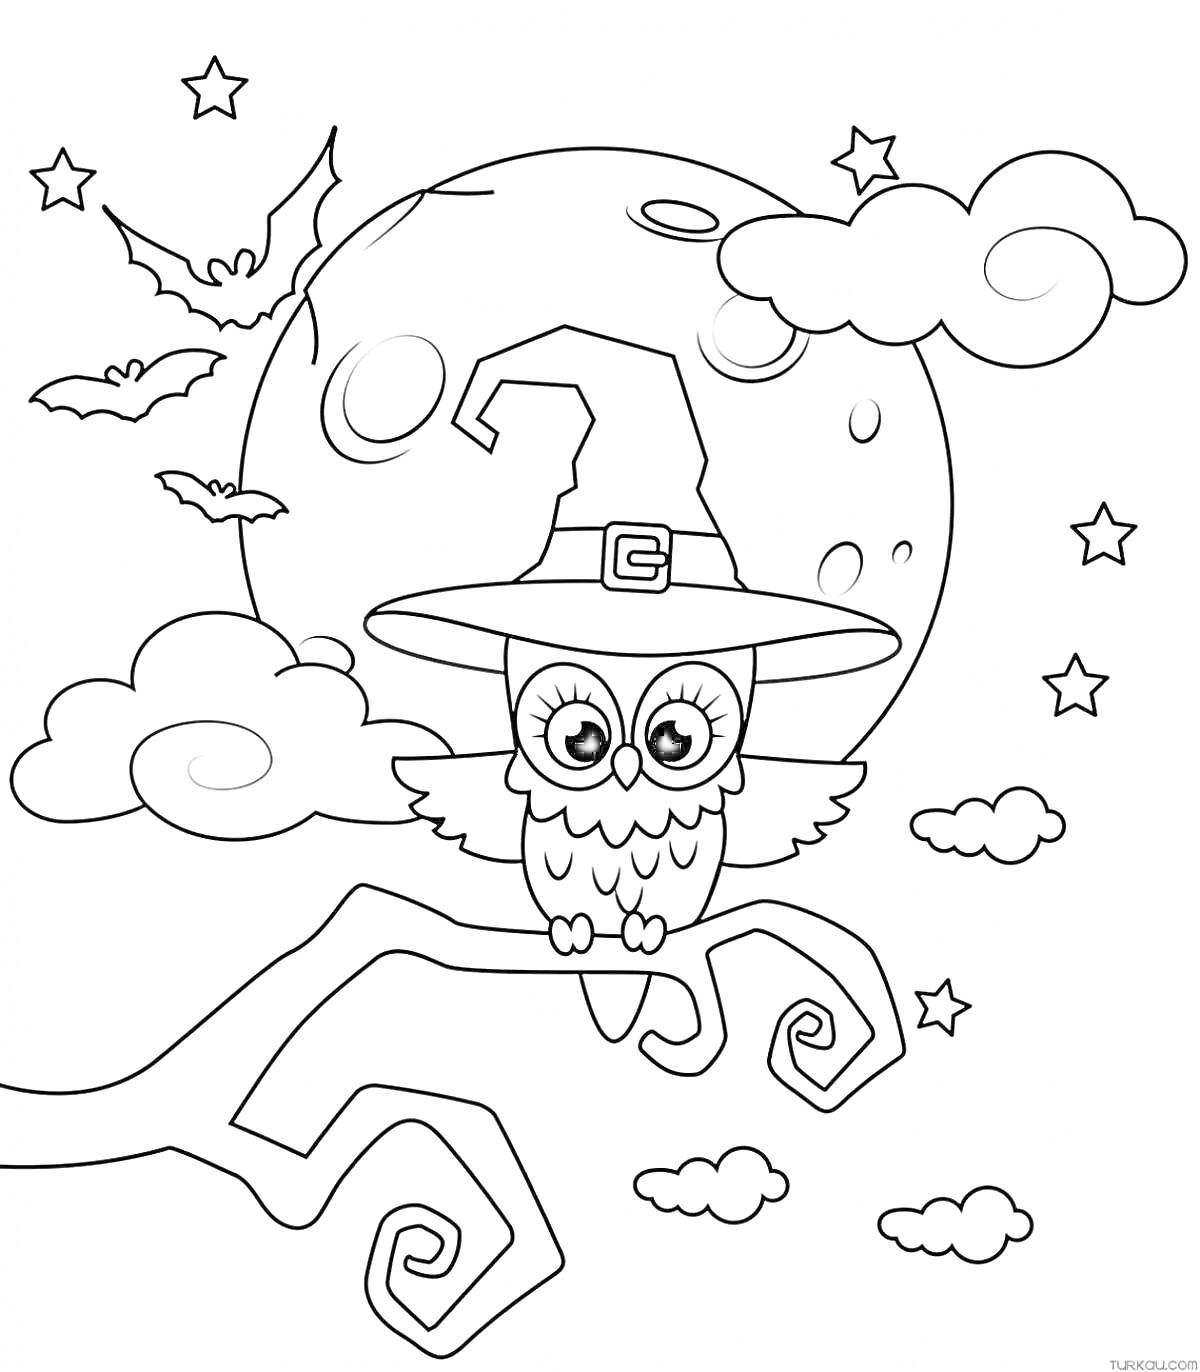 Раскраска Сова в шляпе ведьмы на ветке с полнолунием, летучими мышами, облаками и звездами